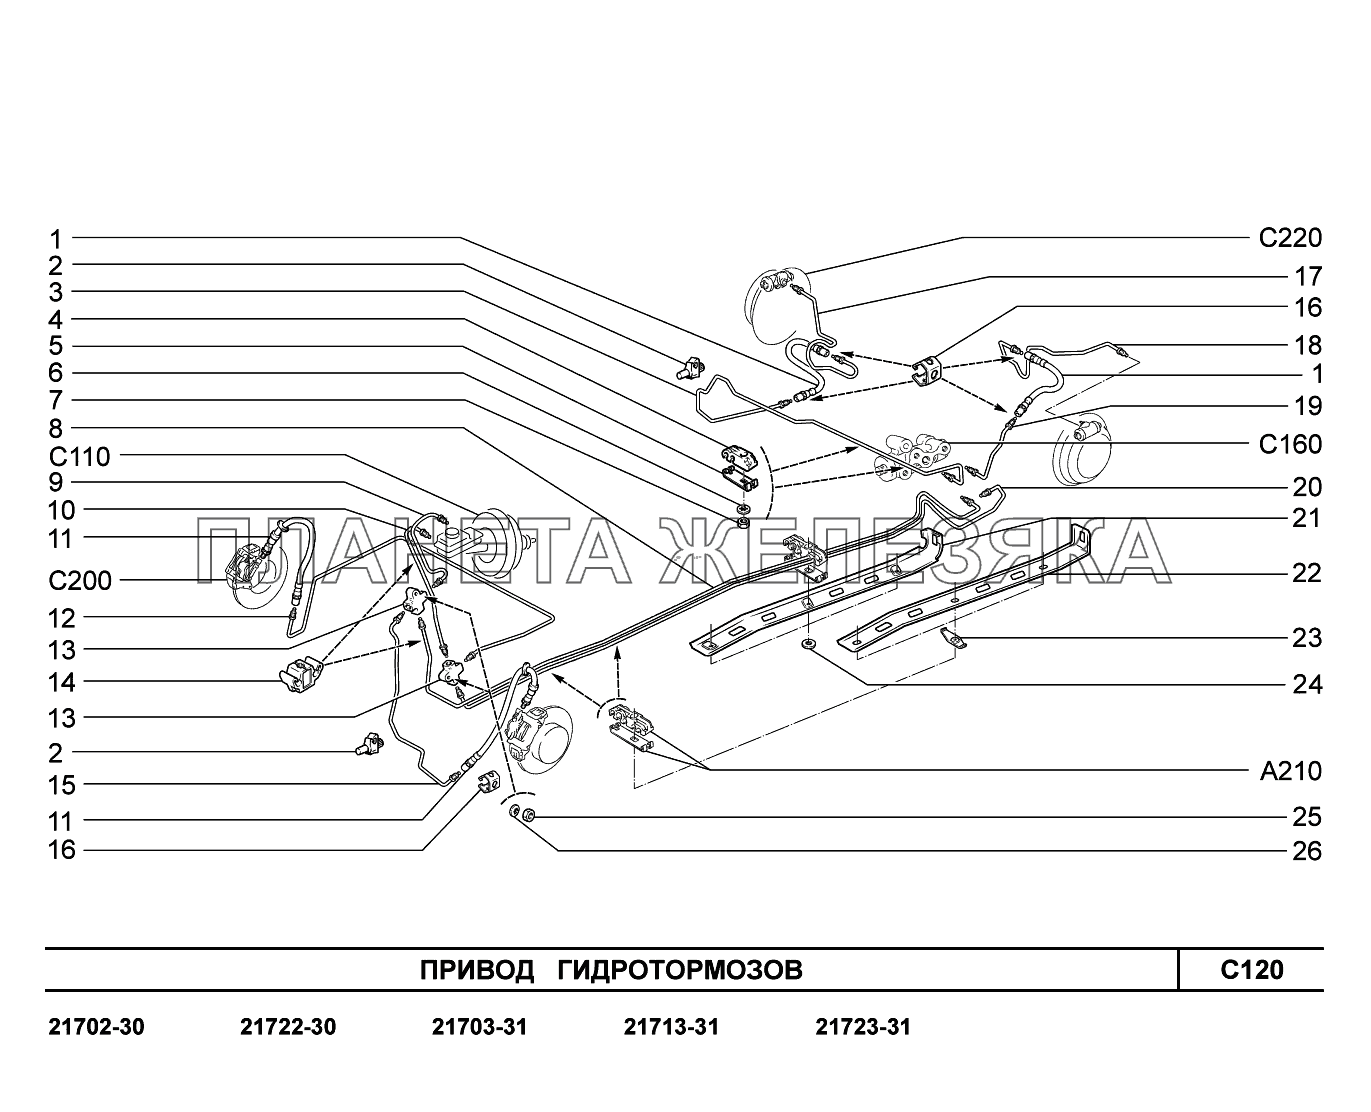 C120. Привод гидротормозов ВАЗ-2170 